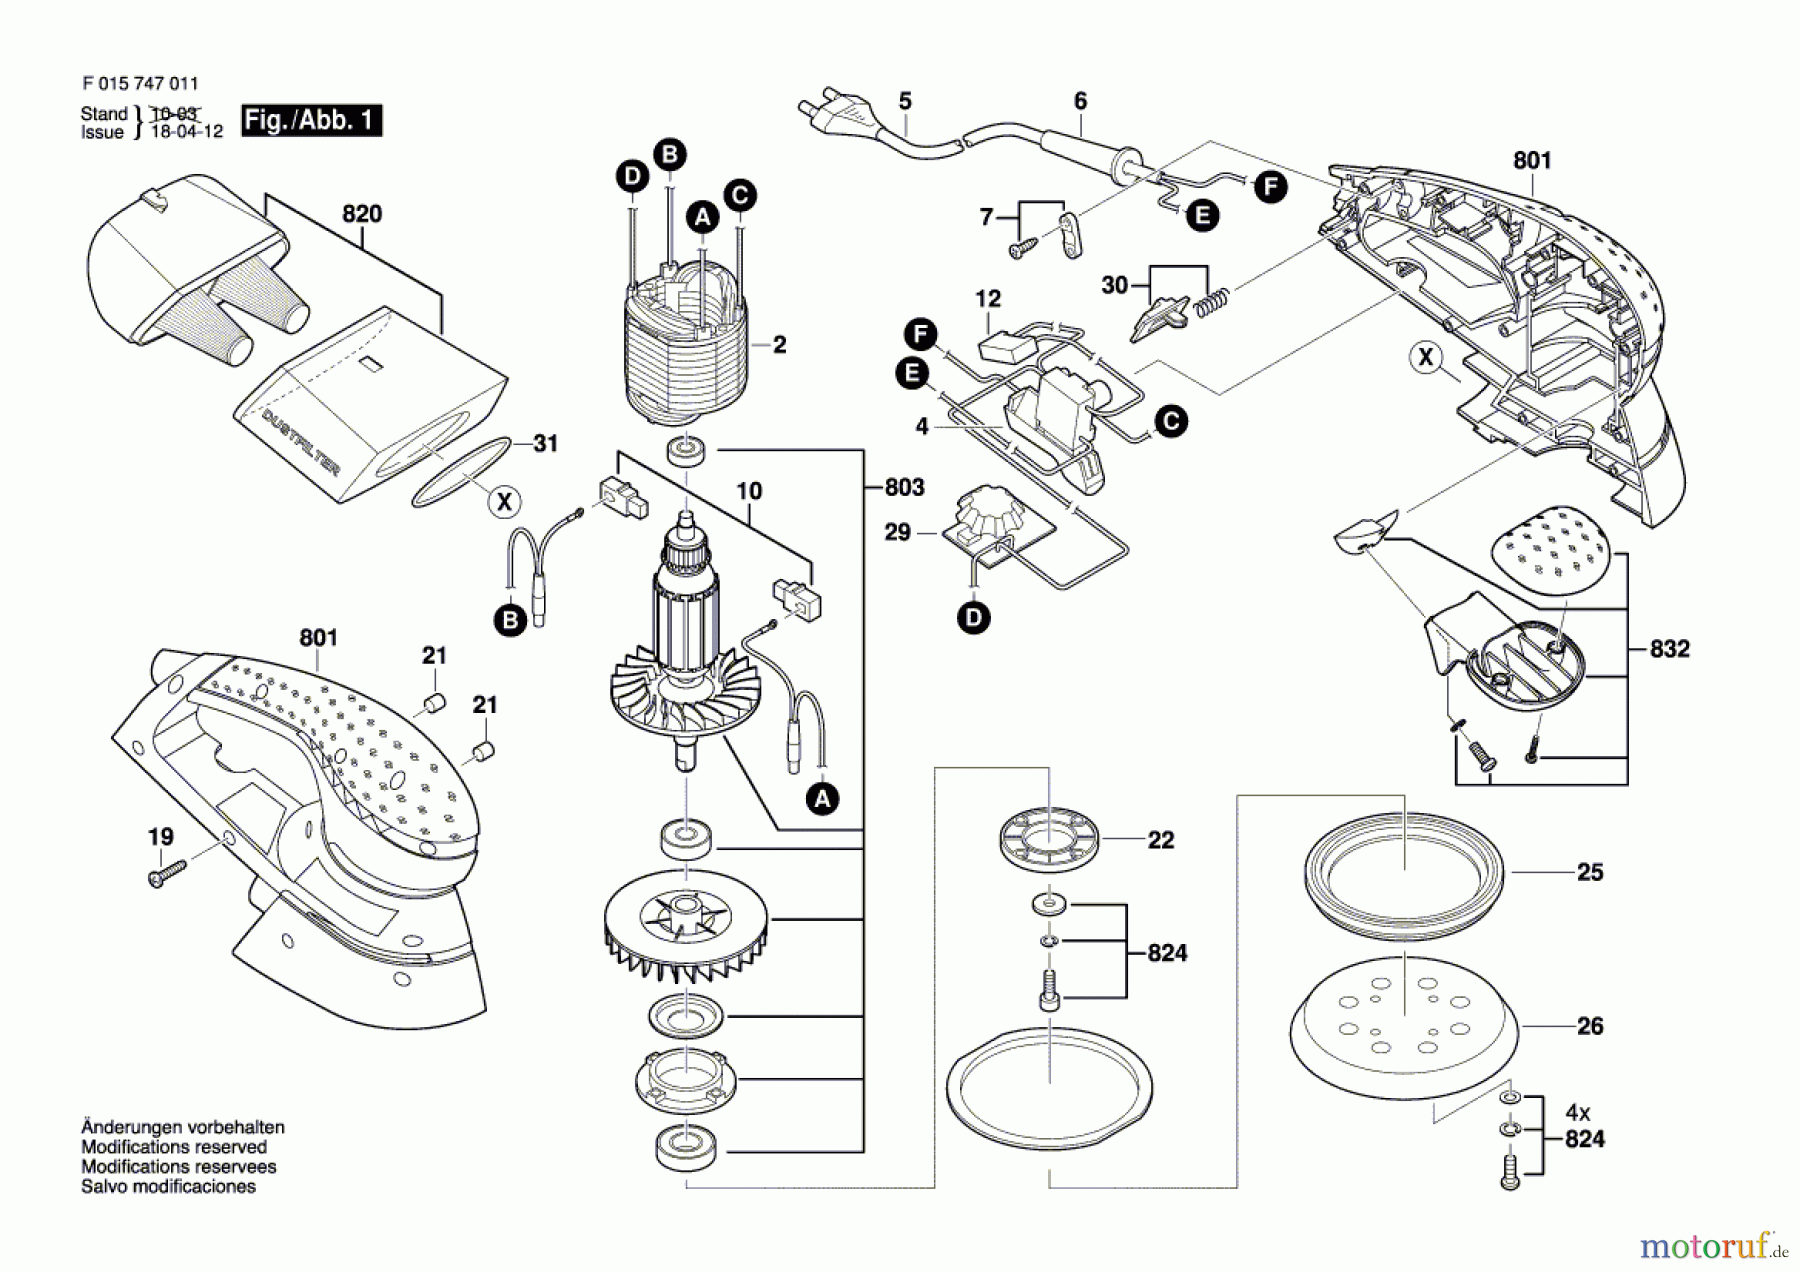  Bosch Werkzeug Exzenterschleifer 7470 Seite 1